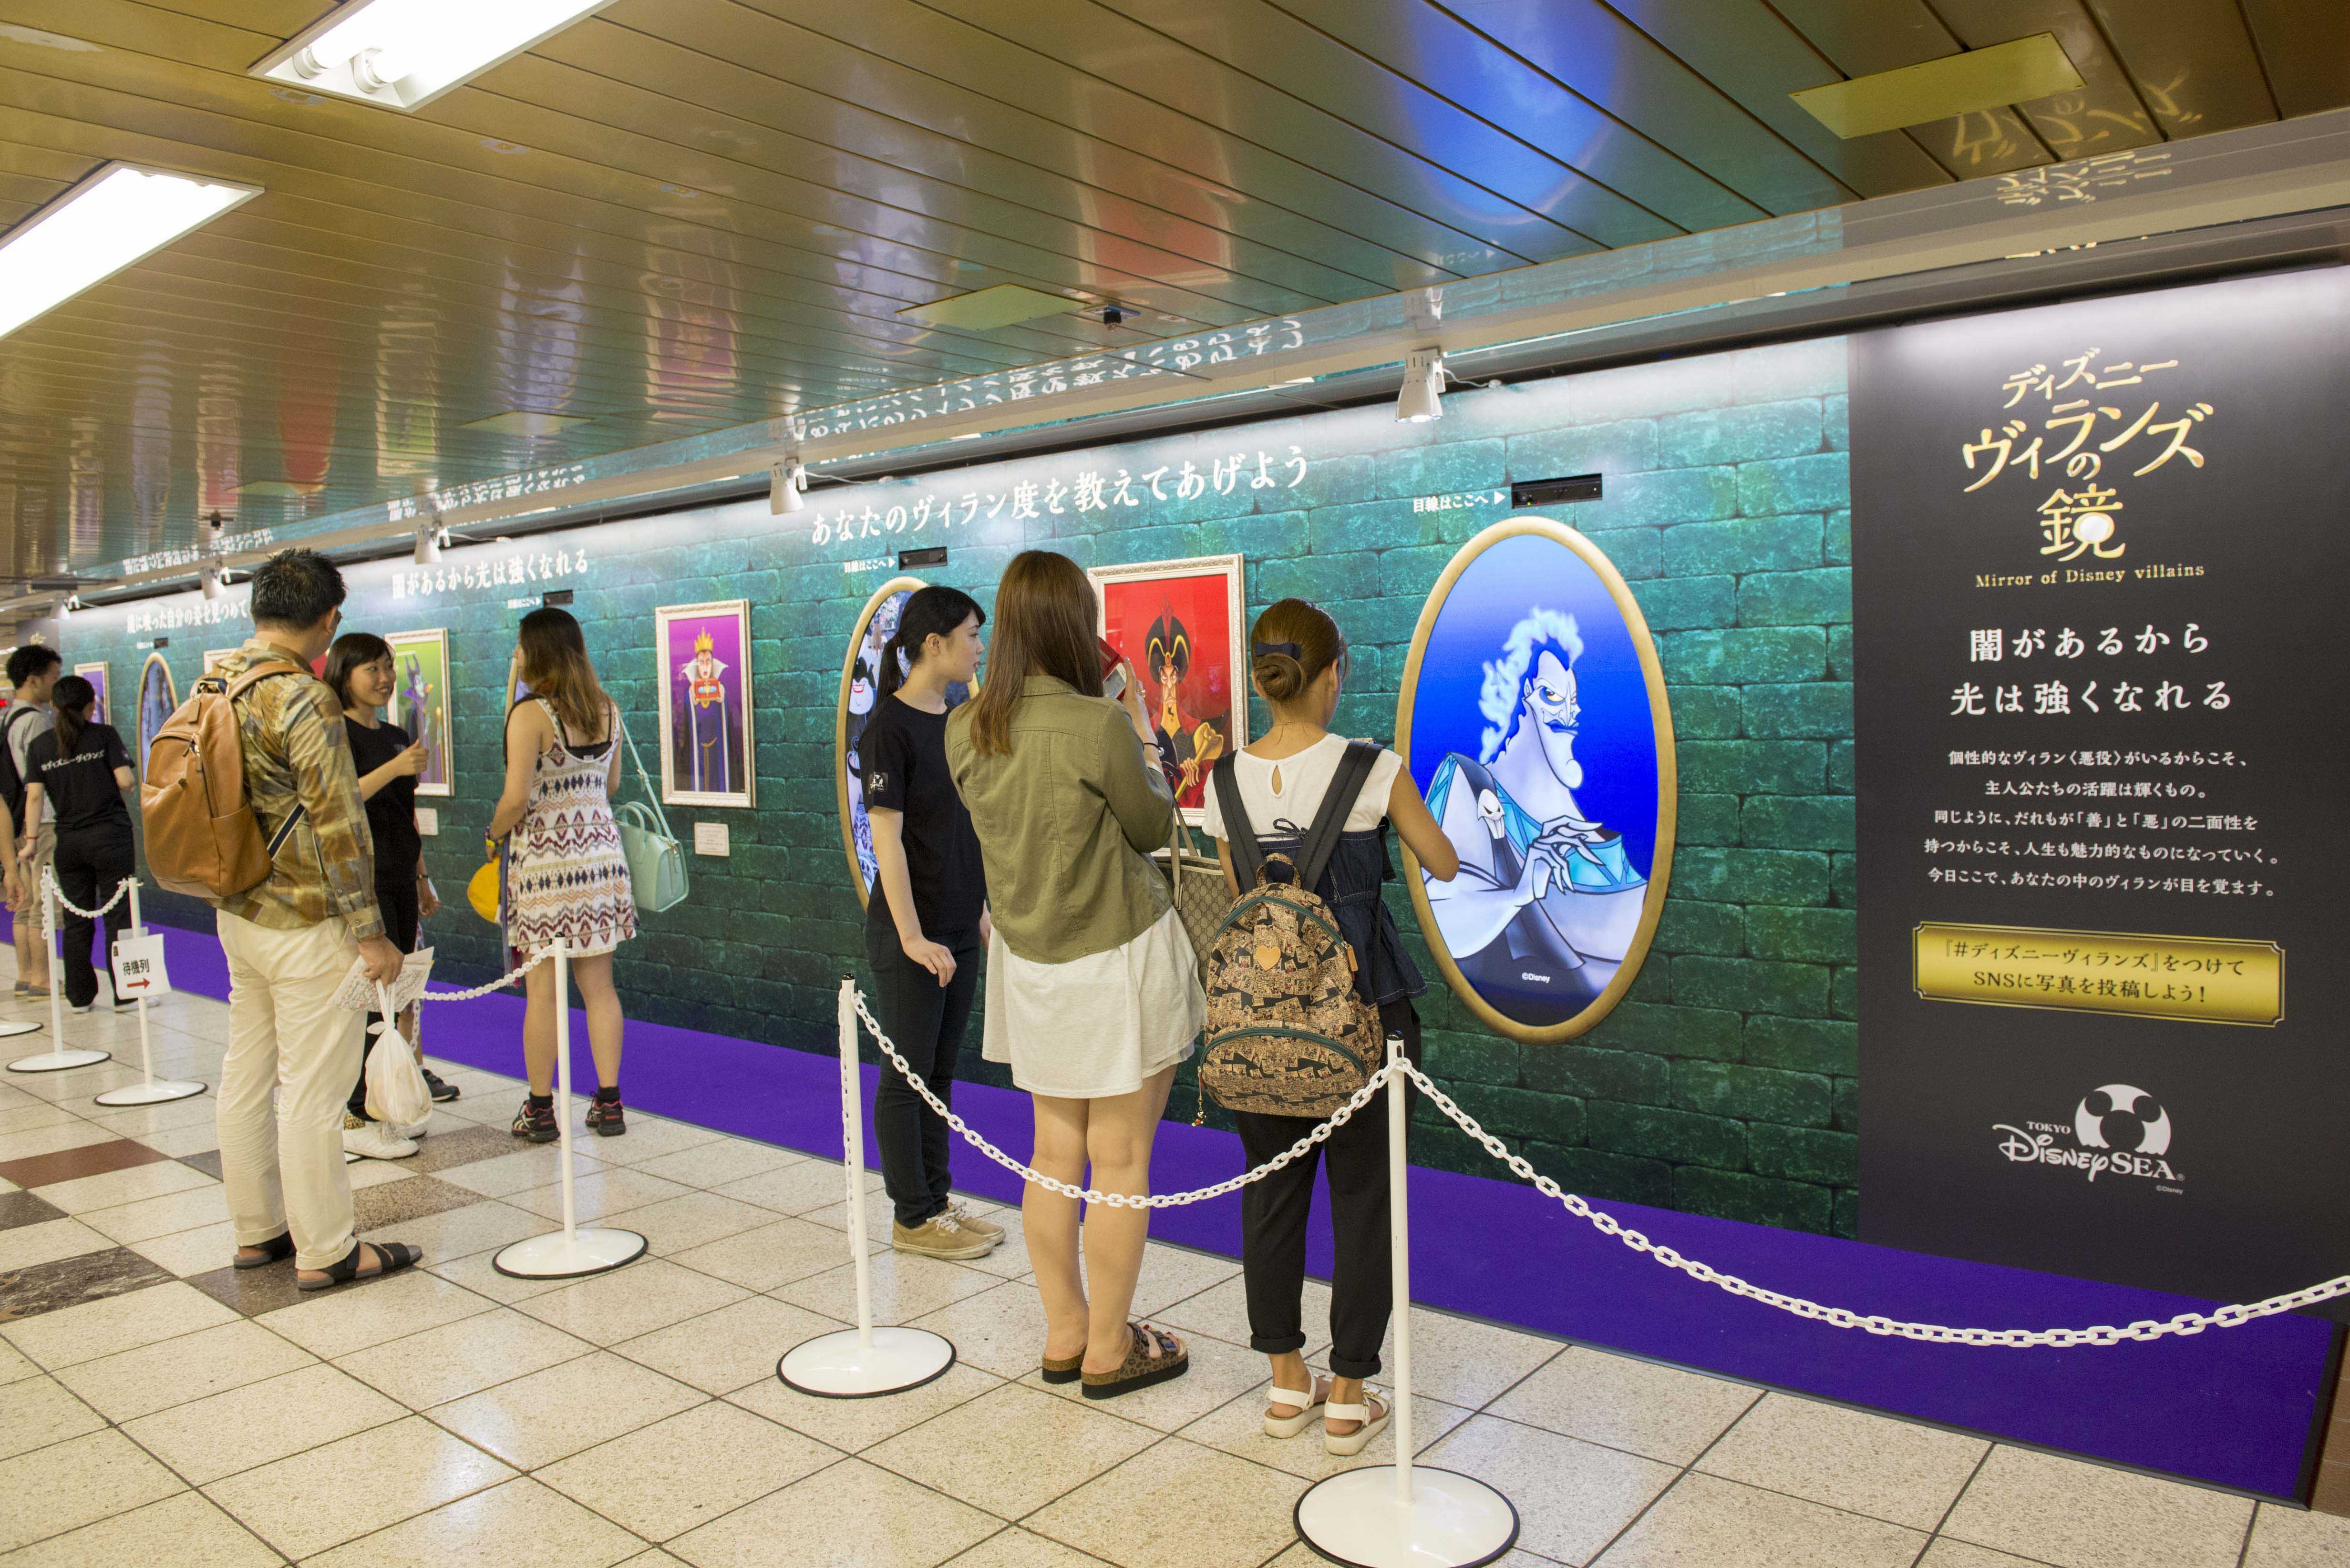 新宿駅に ディズニーヴィランズになれる鏡 が出現 Tdsハロウィーンに登場するヴィランズを一挙紹介 1 2 ディズニー特集 ウレぴあ総研